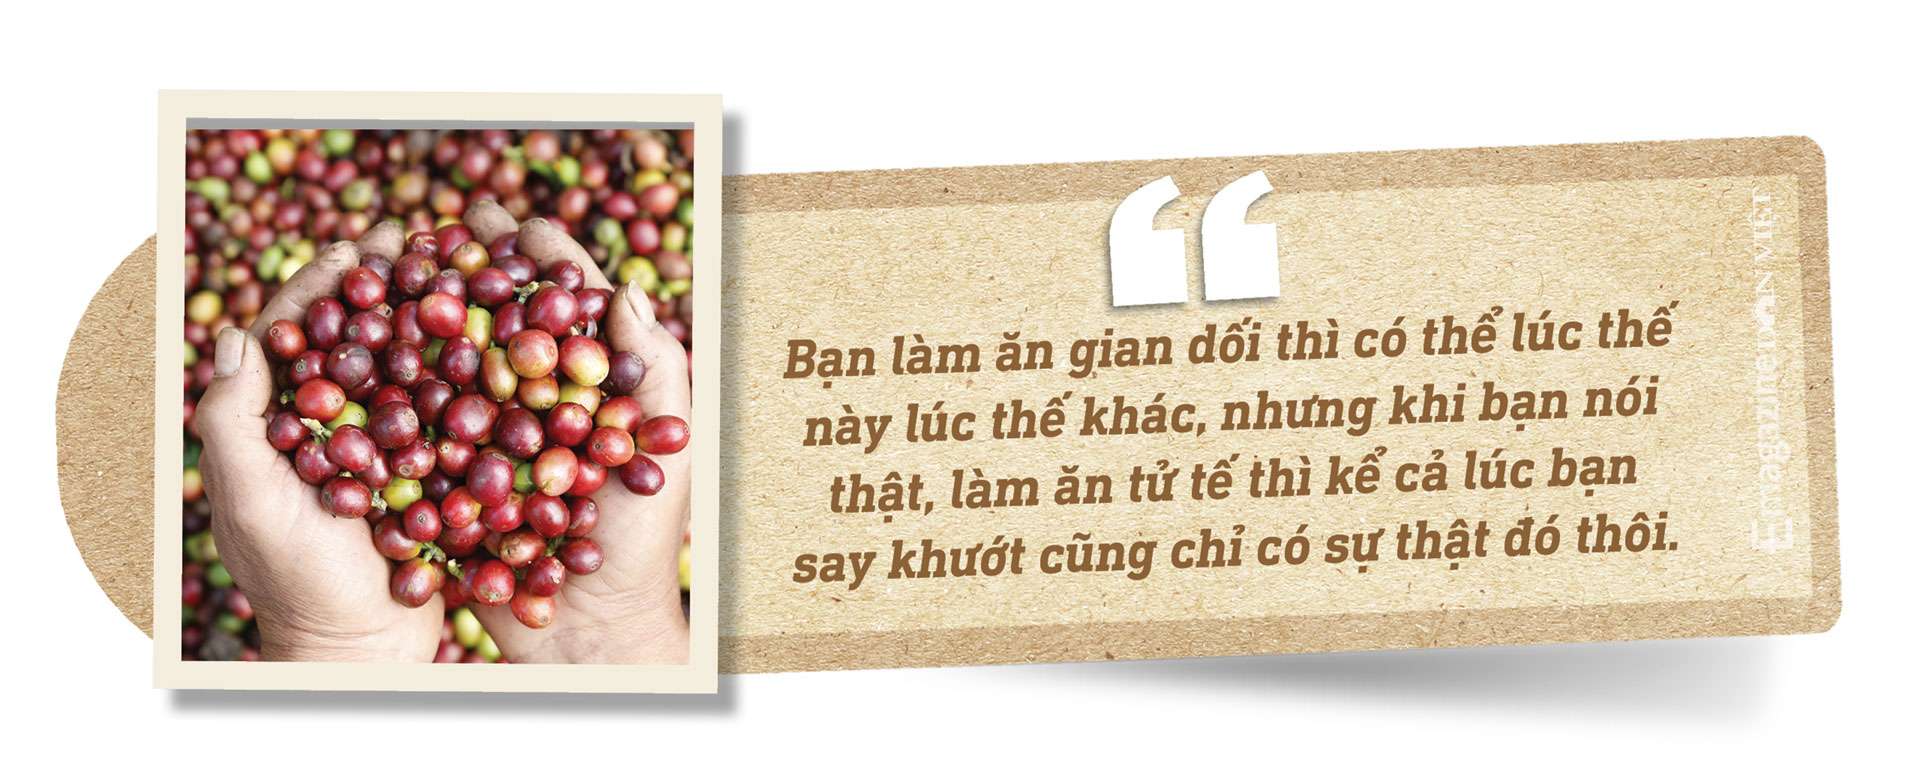 &quot;Vua tiêu&quot; Phan Minh Thông: Tôi cô đơn khi bán cà phê nguyên chất ở Việt Nam - Ảnh 10.